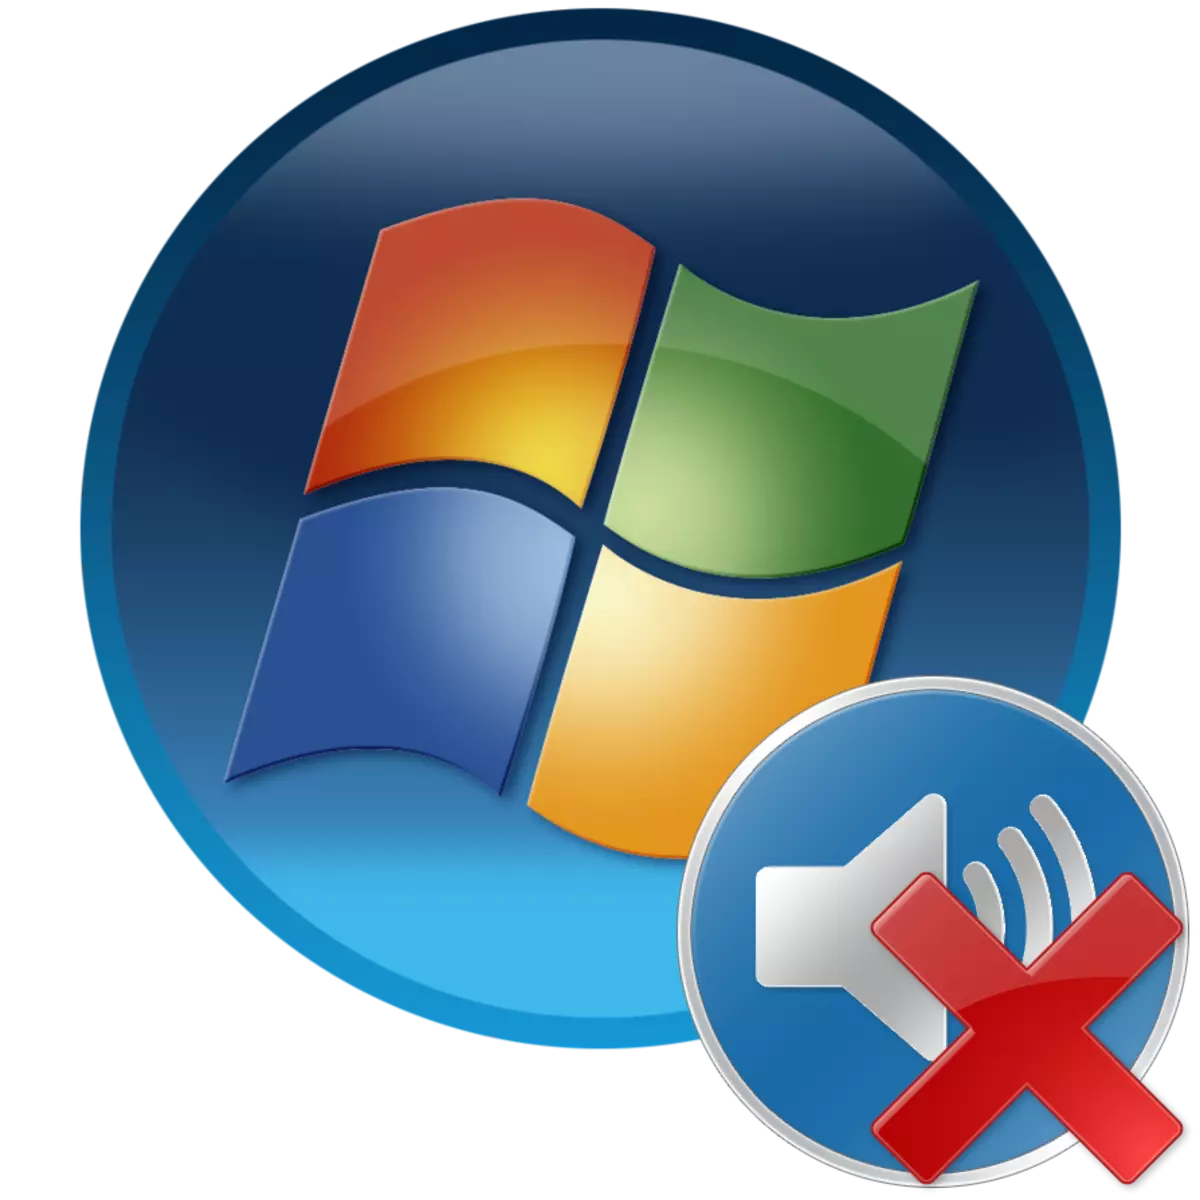 ອຸປະກອນຜົນຜະລິດບໍ່ໄດ້ຖືກຕິດຕັ້ງຢູ່ໃນ Windows 7